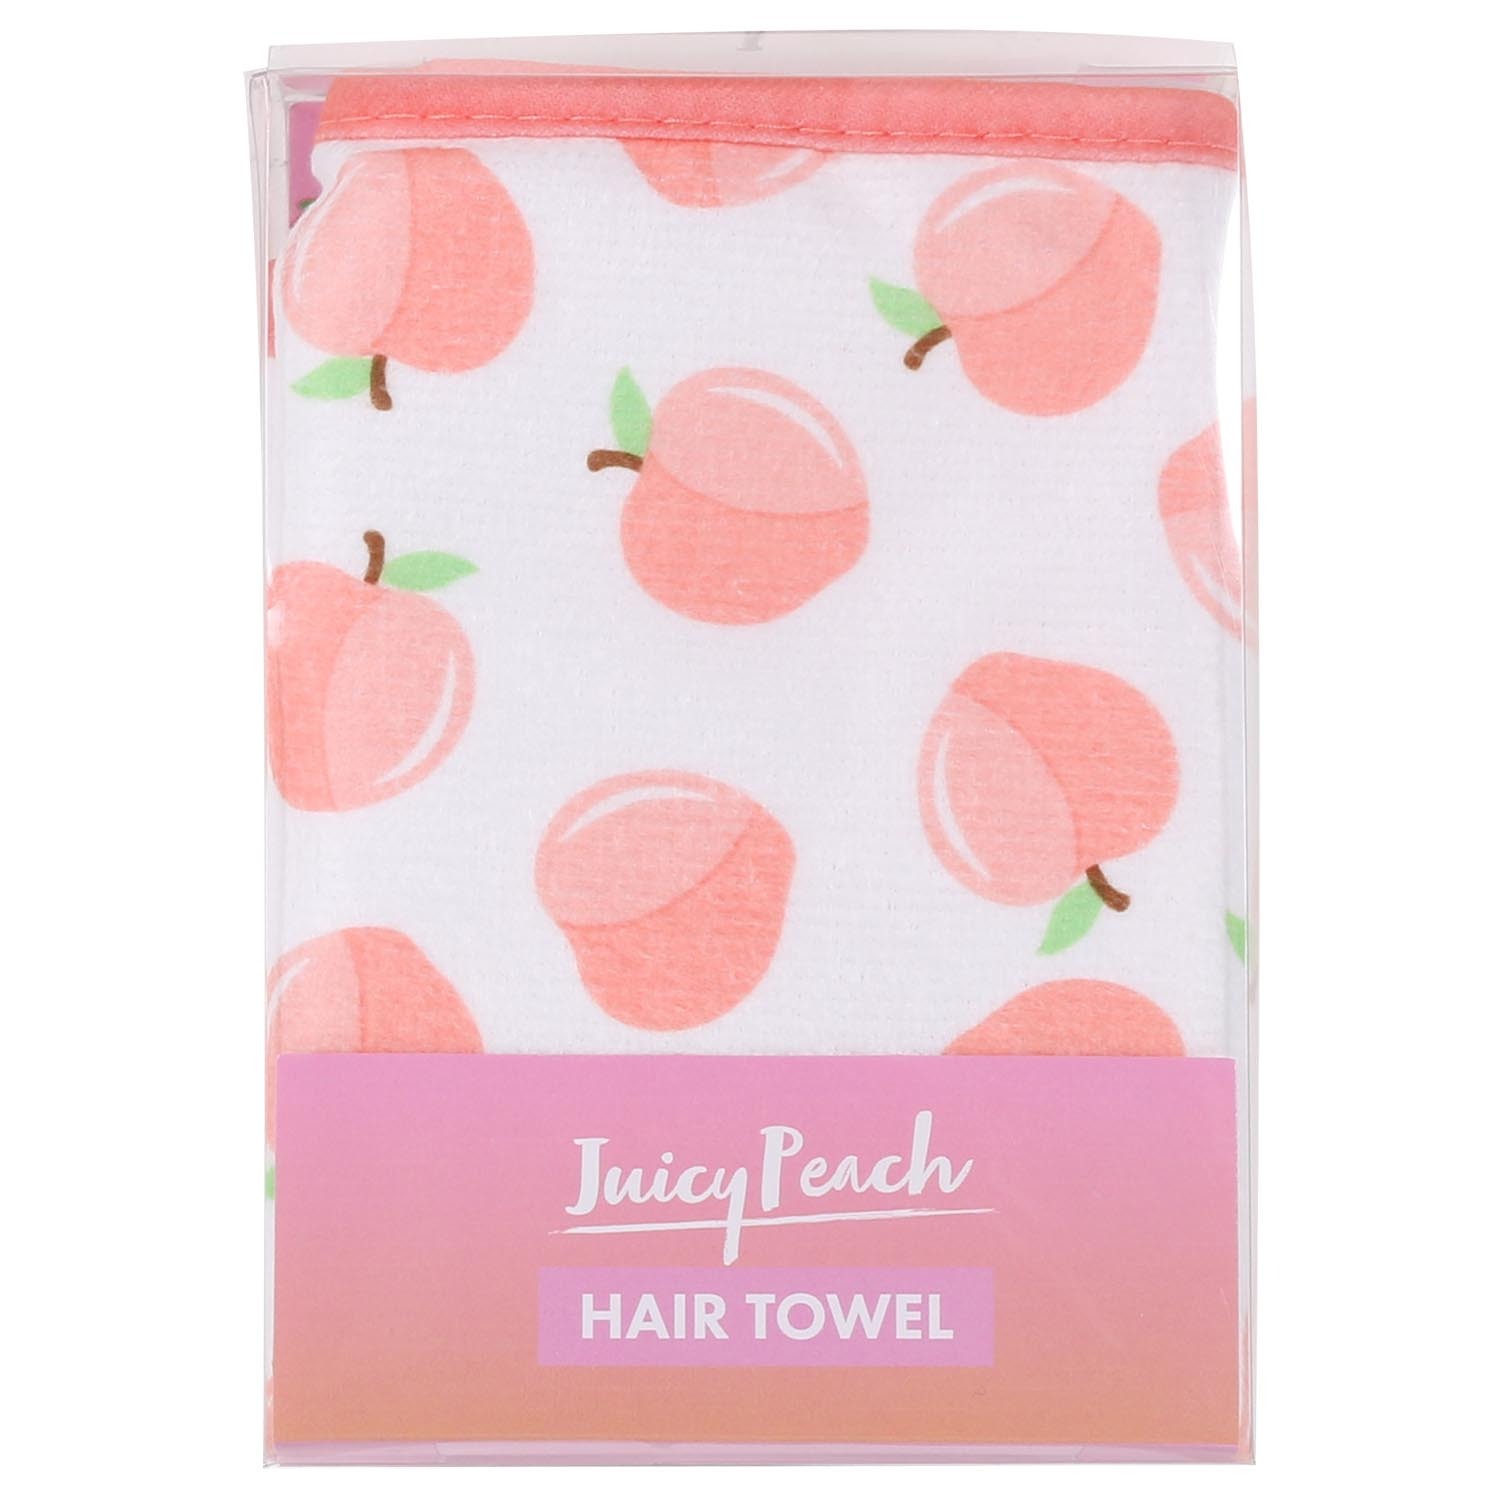 Juicy Peach Hair Towel Image